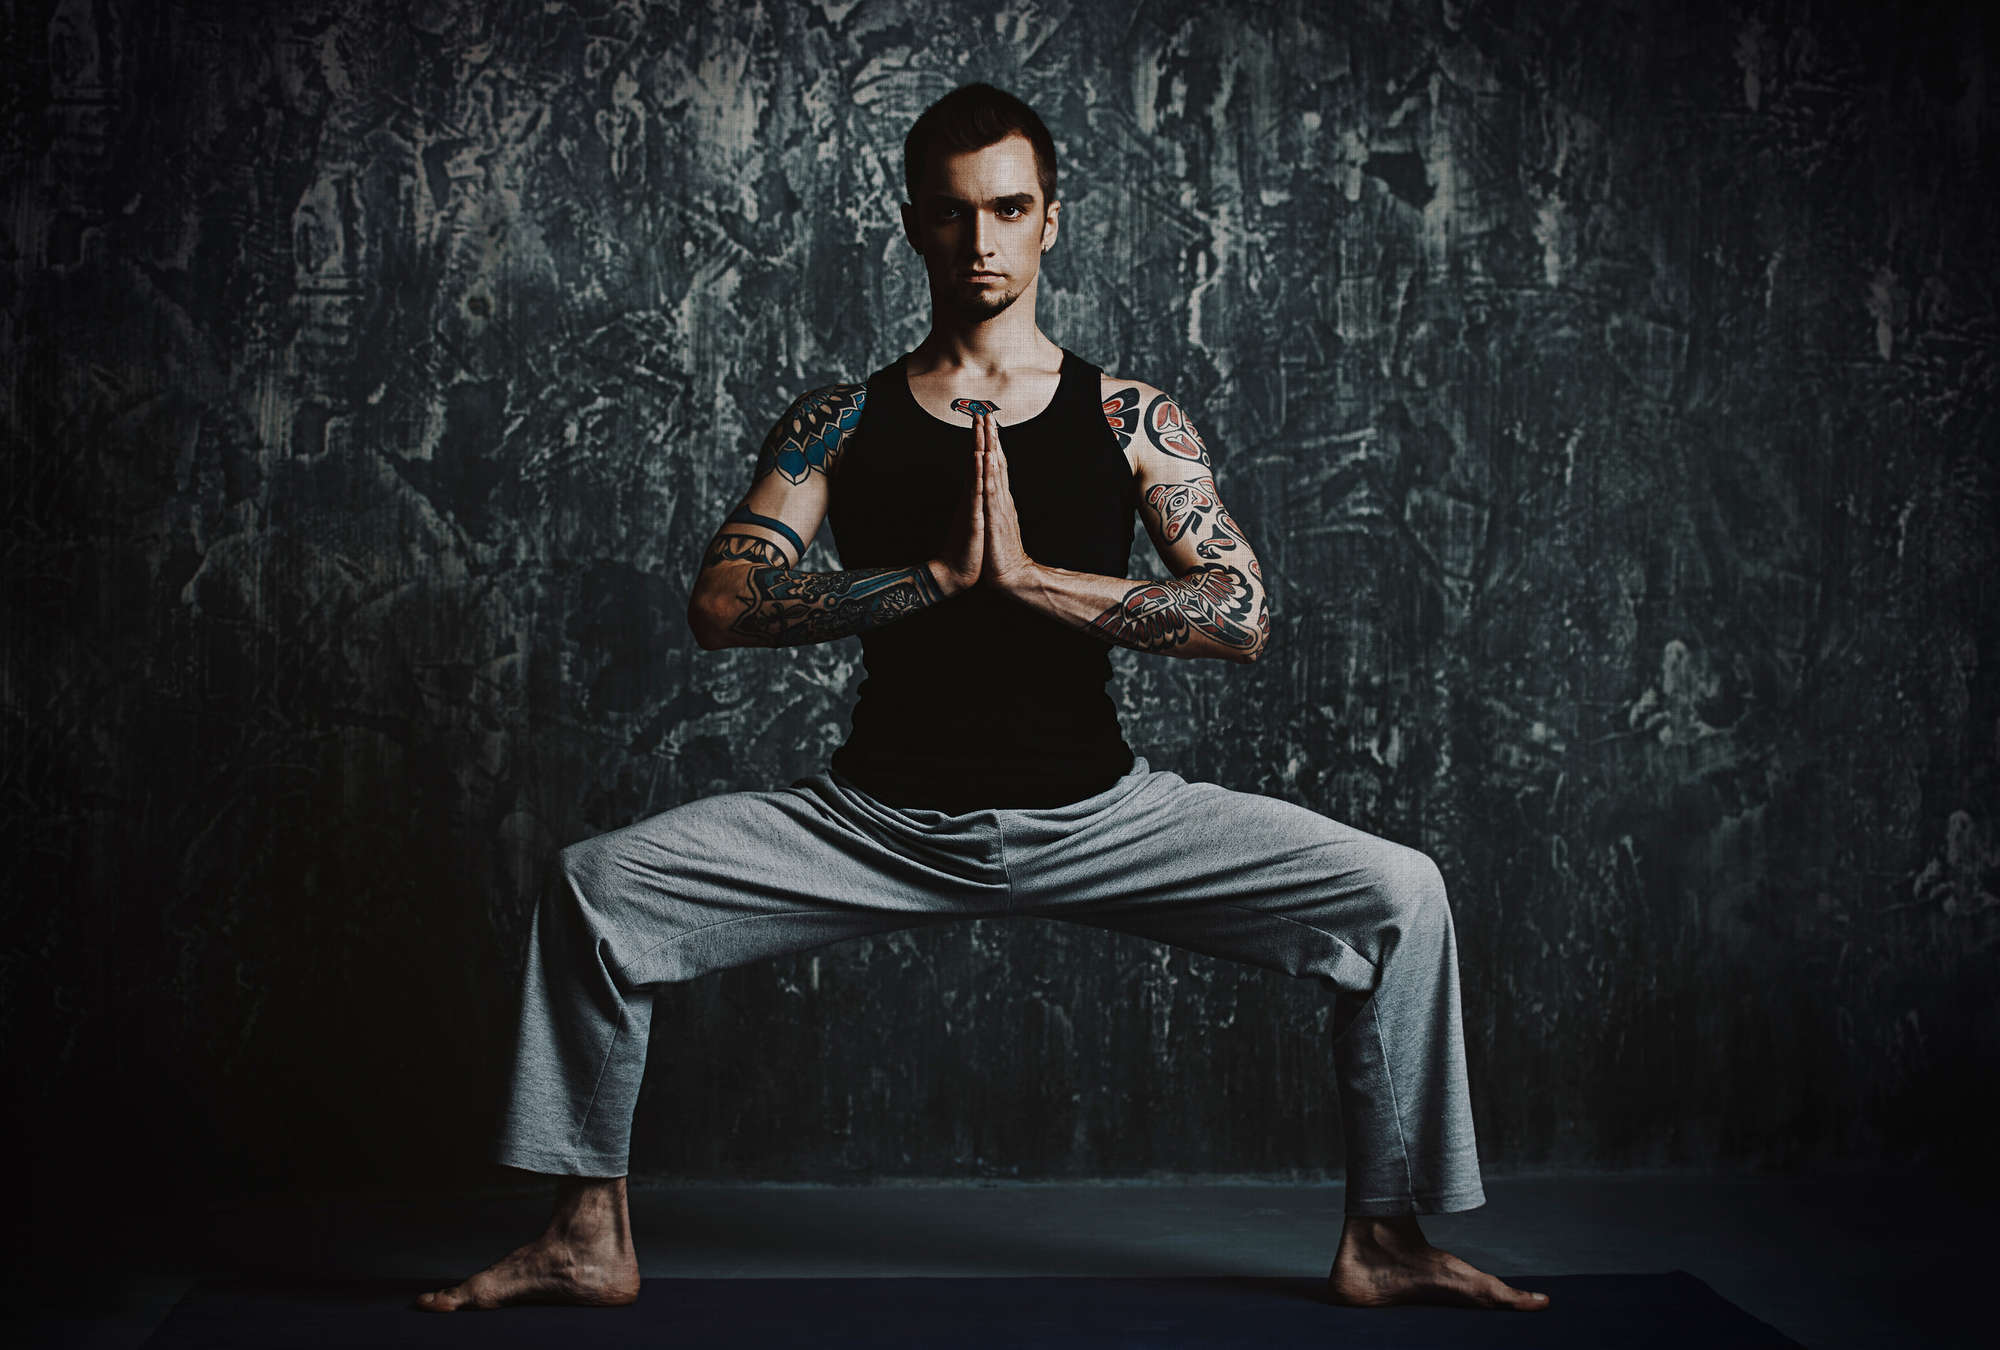             Chandra 1 - Homme faisant une pose de yoga comme Papier peint panoramique en lin naturel structuré - bleu, noir | structure Non tissé
        